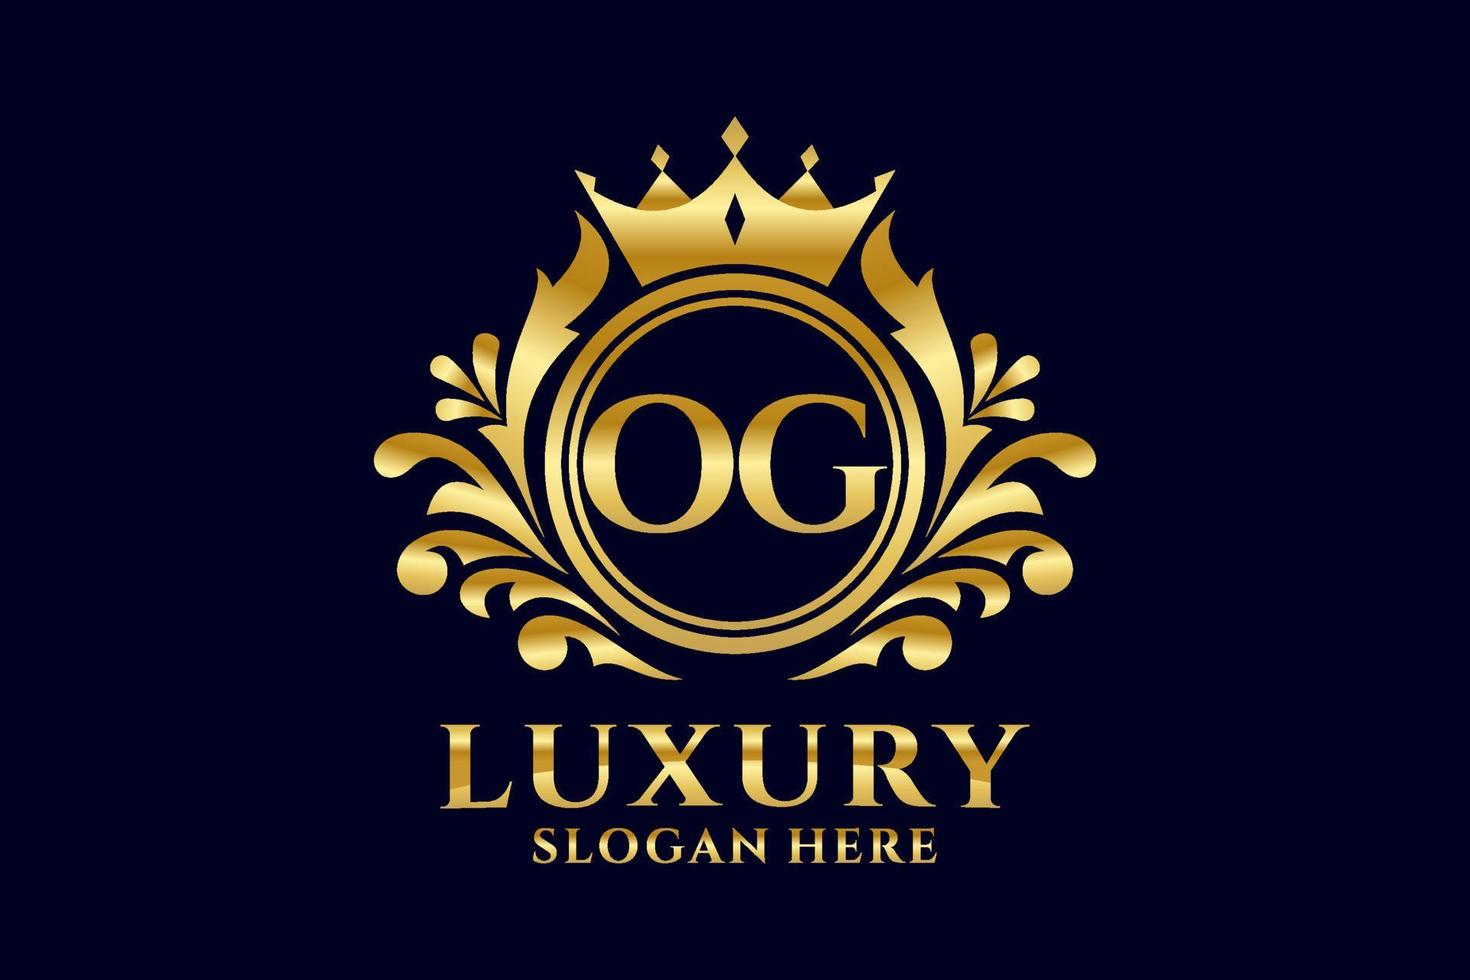 Royal Luxury Logo-Vorlage mit anfänglichem og-Buchstaben in Vektorgrafiken für luxuriöse Branding-Projekte und andere Vektorillustrationen. vektor